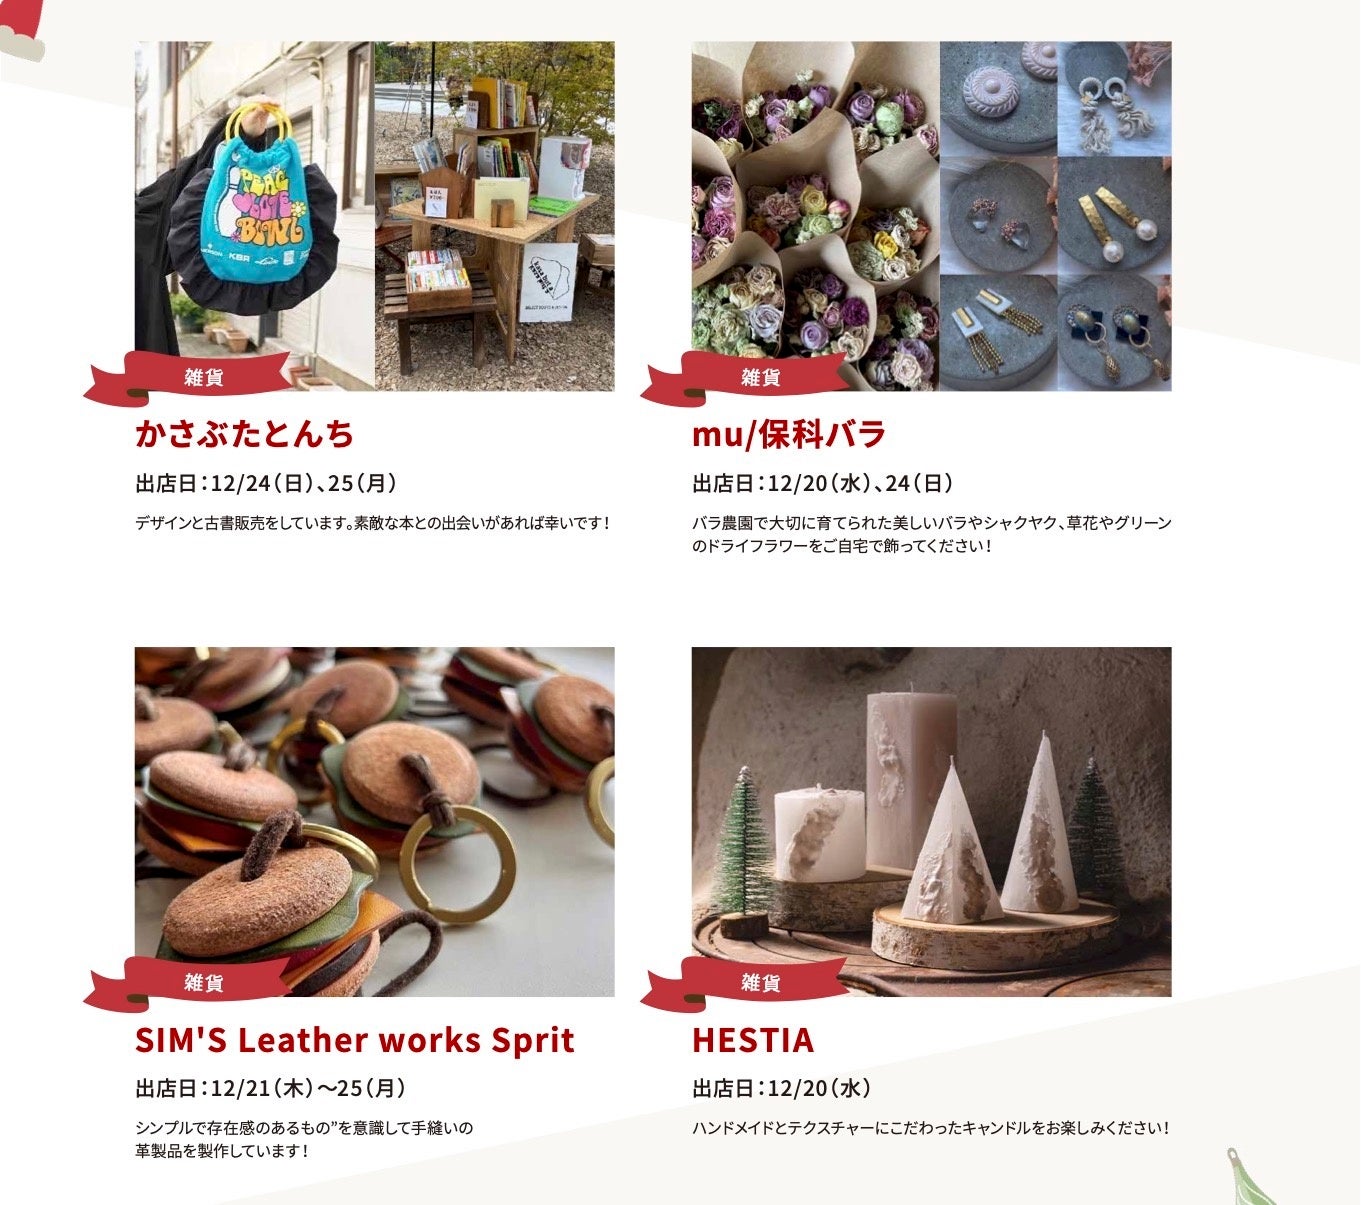 注目の軽井沢クリスマスマーケット！限定グルメや雑貨ブース約30店舗公開